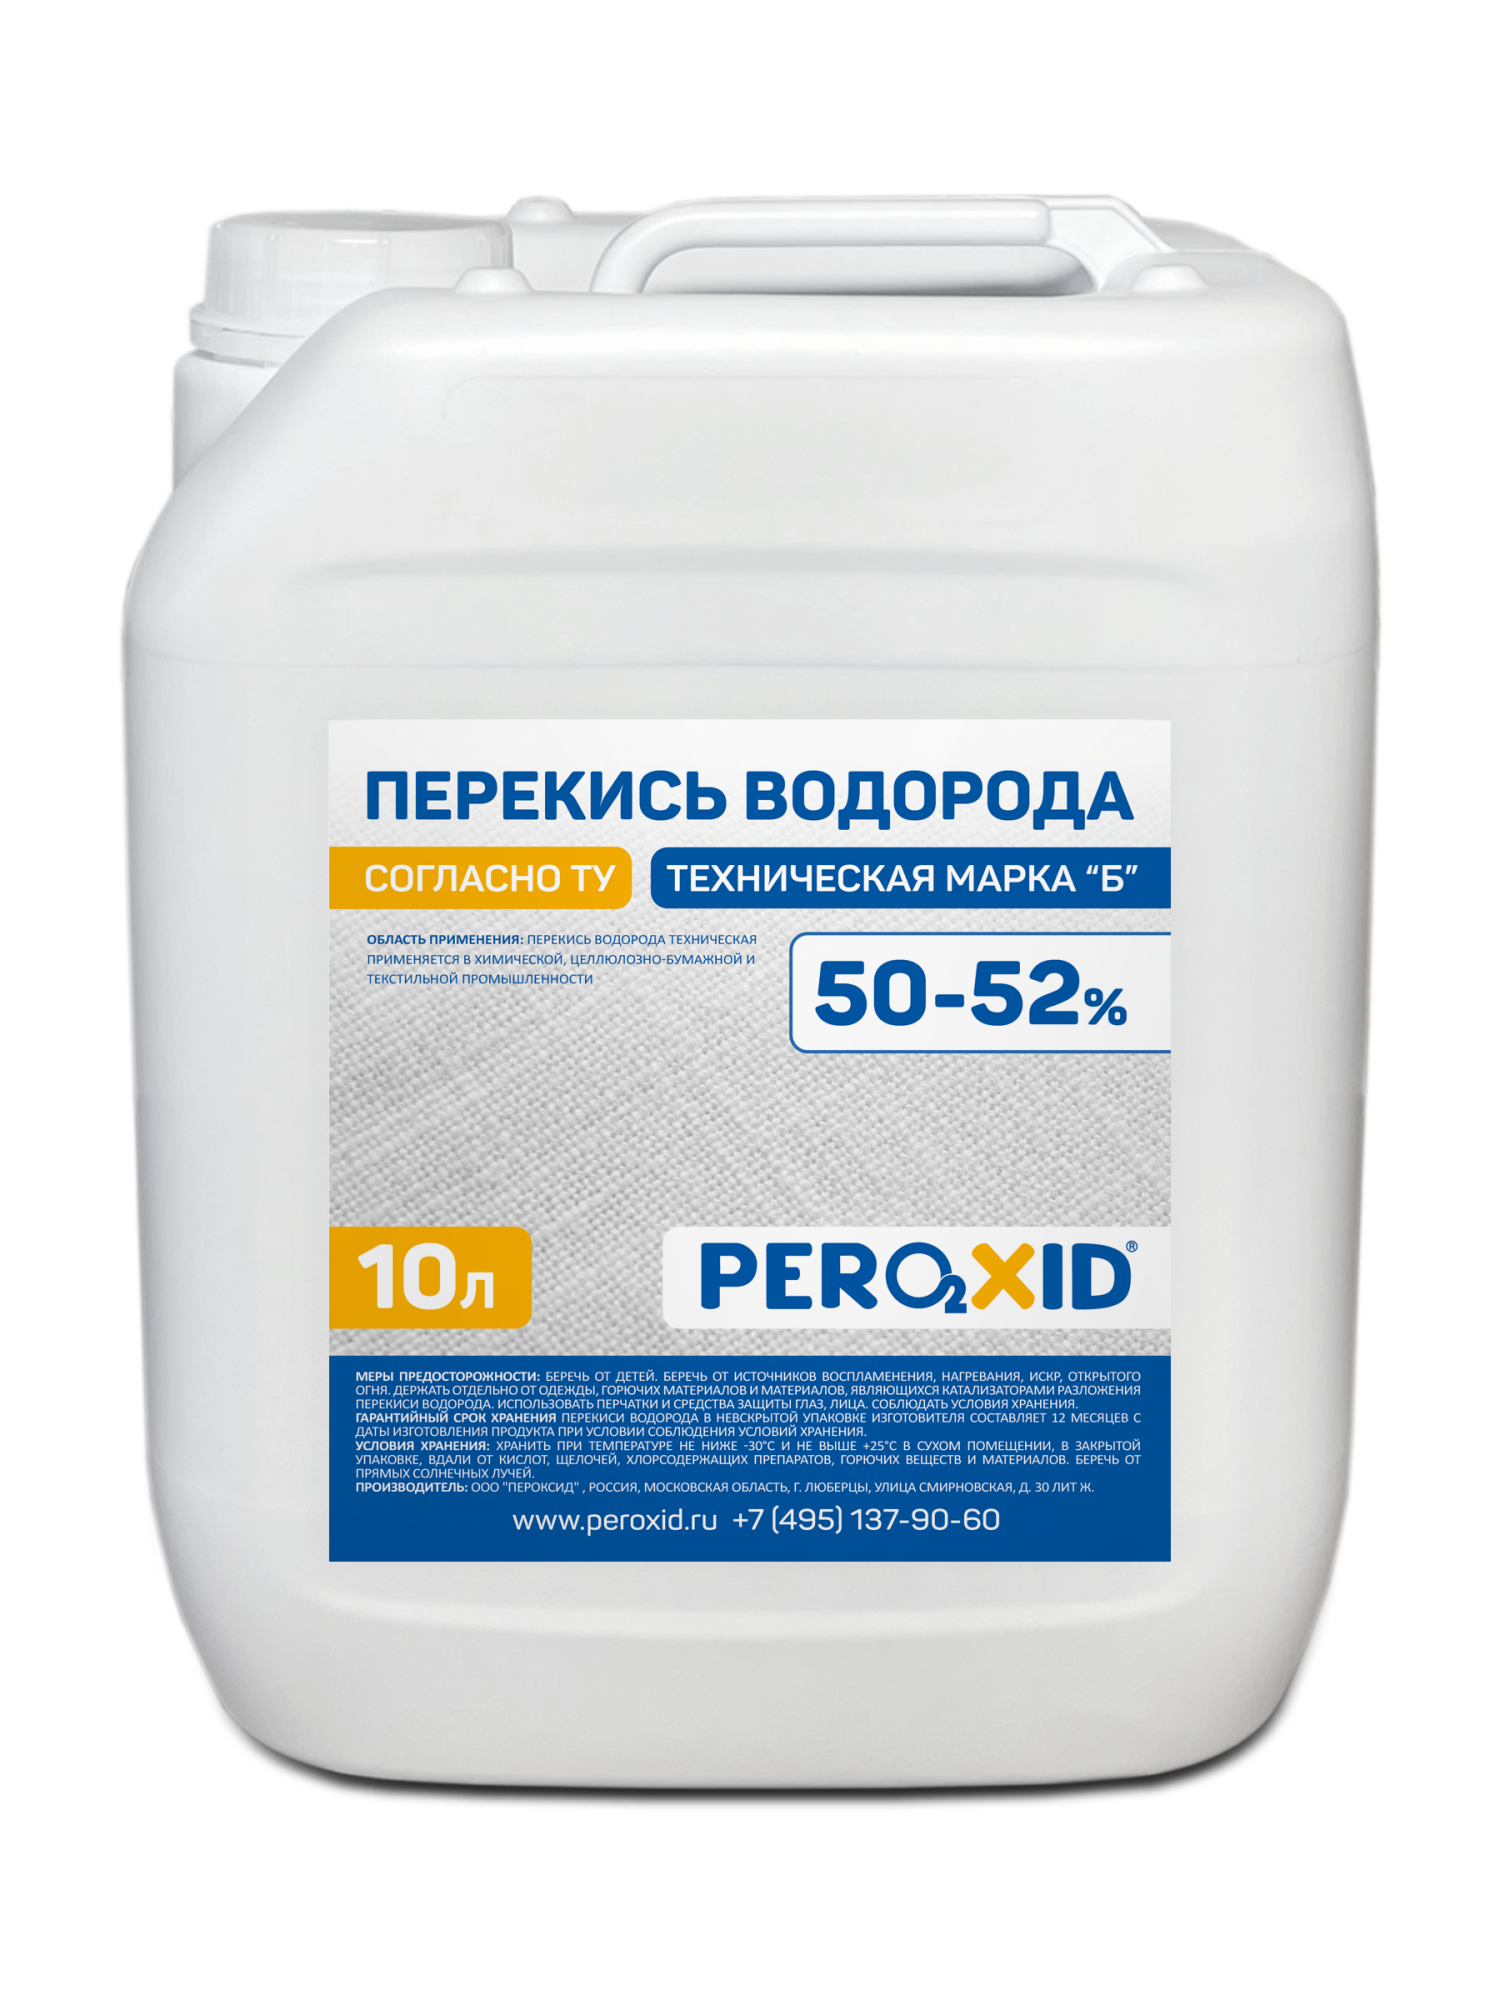 Перекись водорода техническая PEROXID 50-52% марка Б ТУ 2123-002-25665344-2008 10 л/12 кг